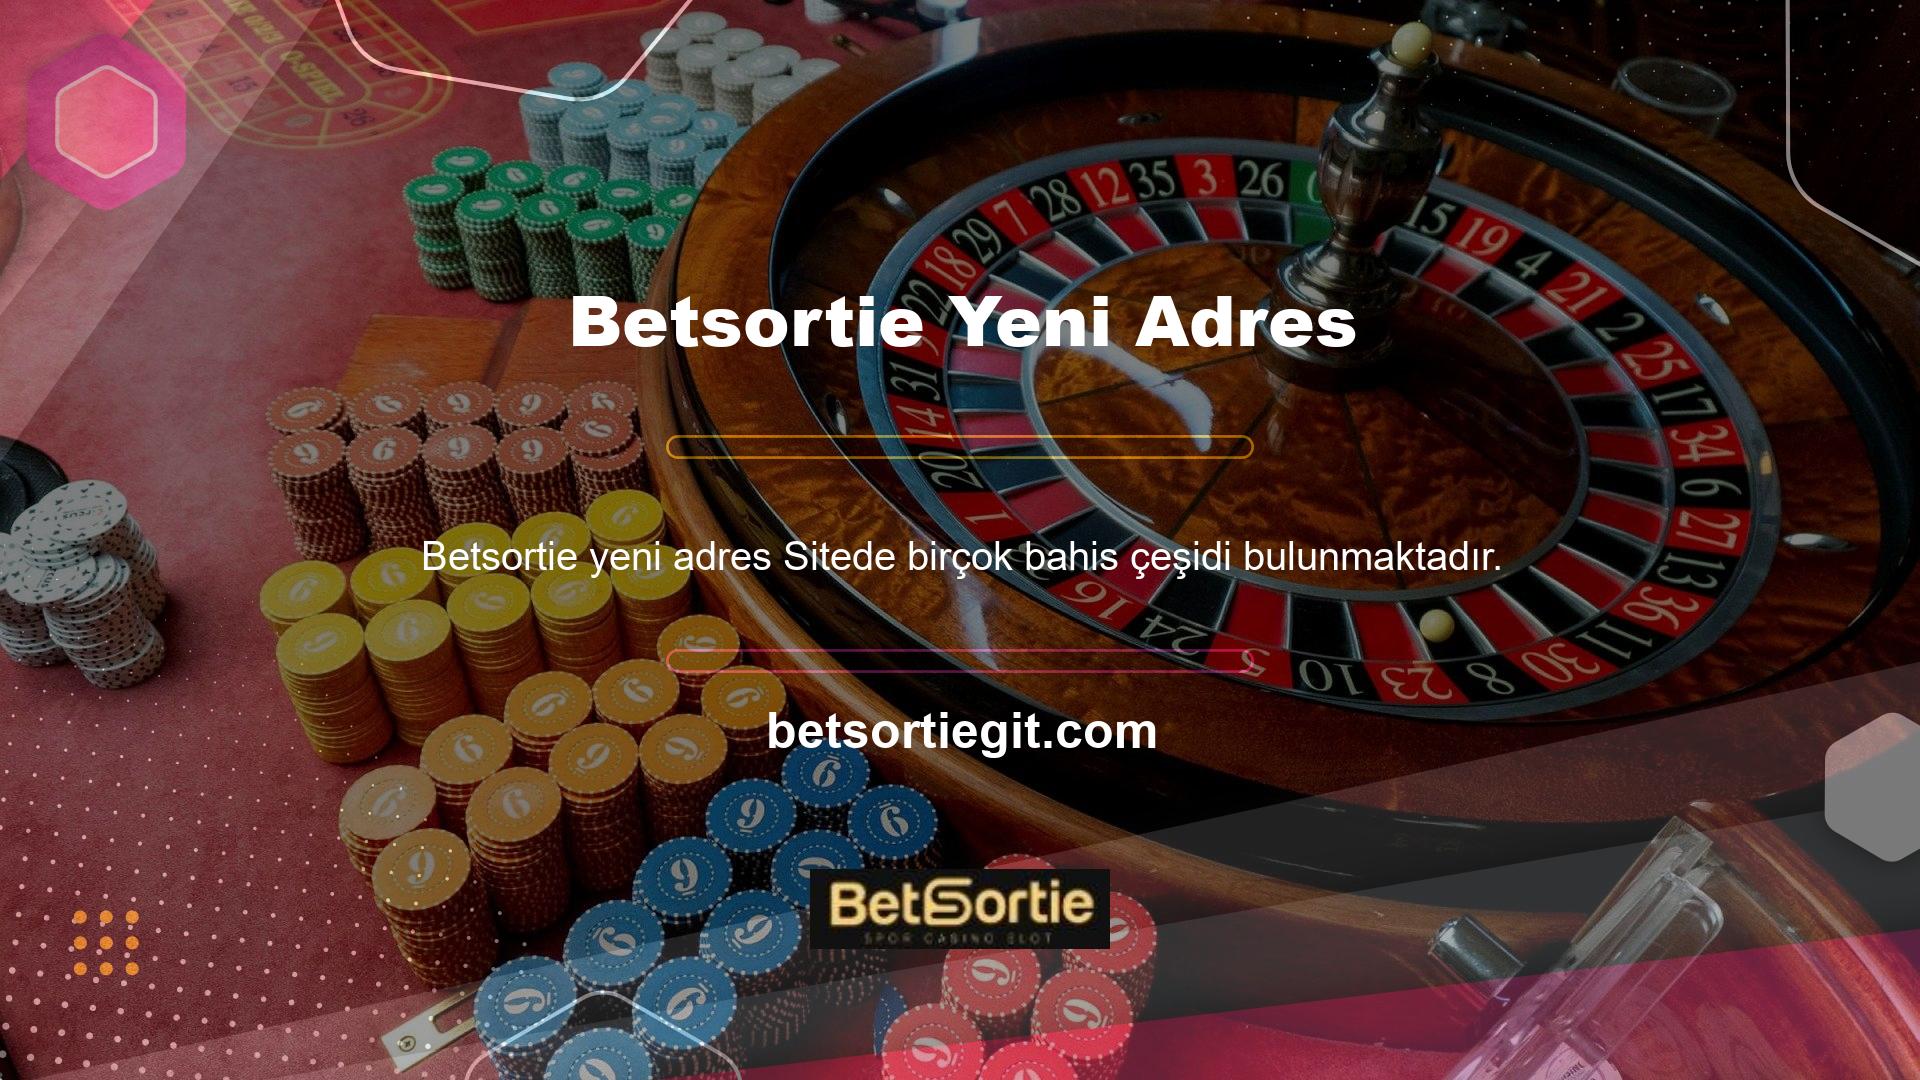 Tüm spor bahisleri, poker, Betsortie Canlı Casino ve bingo bahisleri mevcuttur